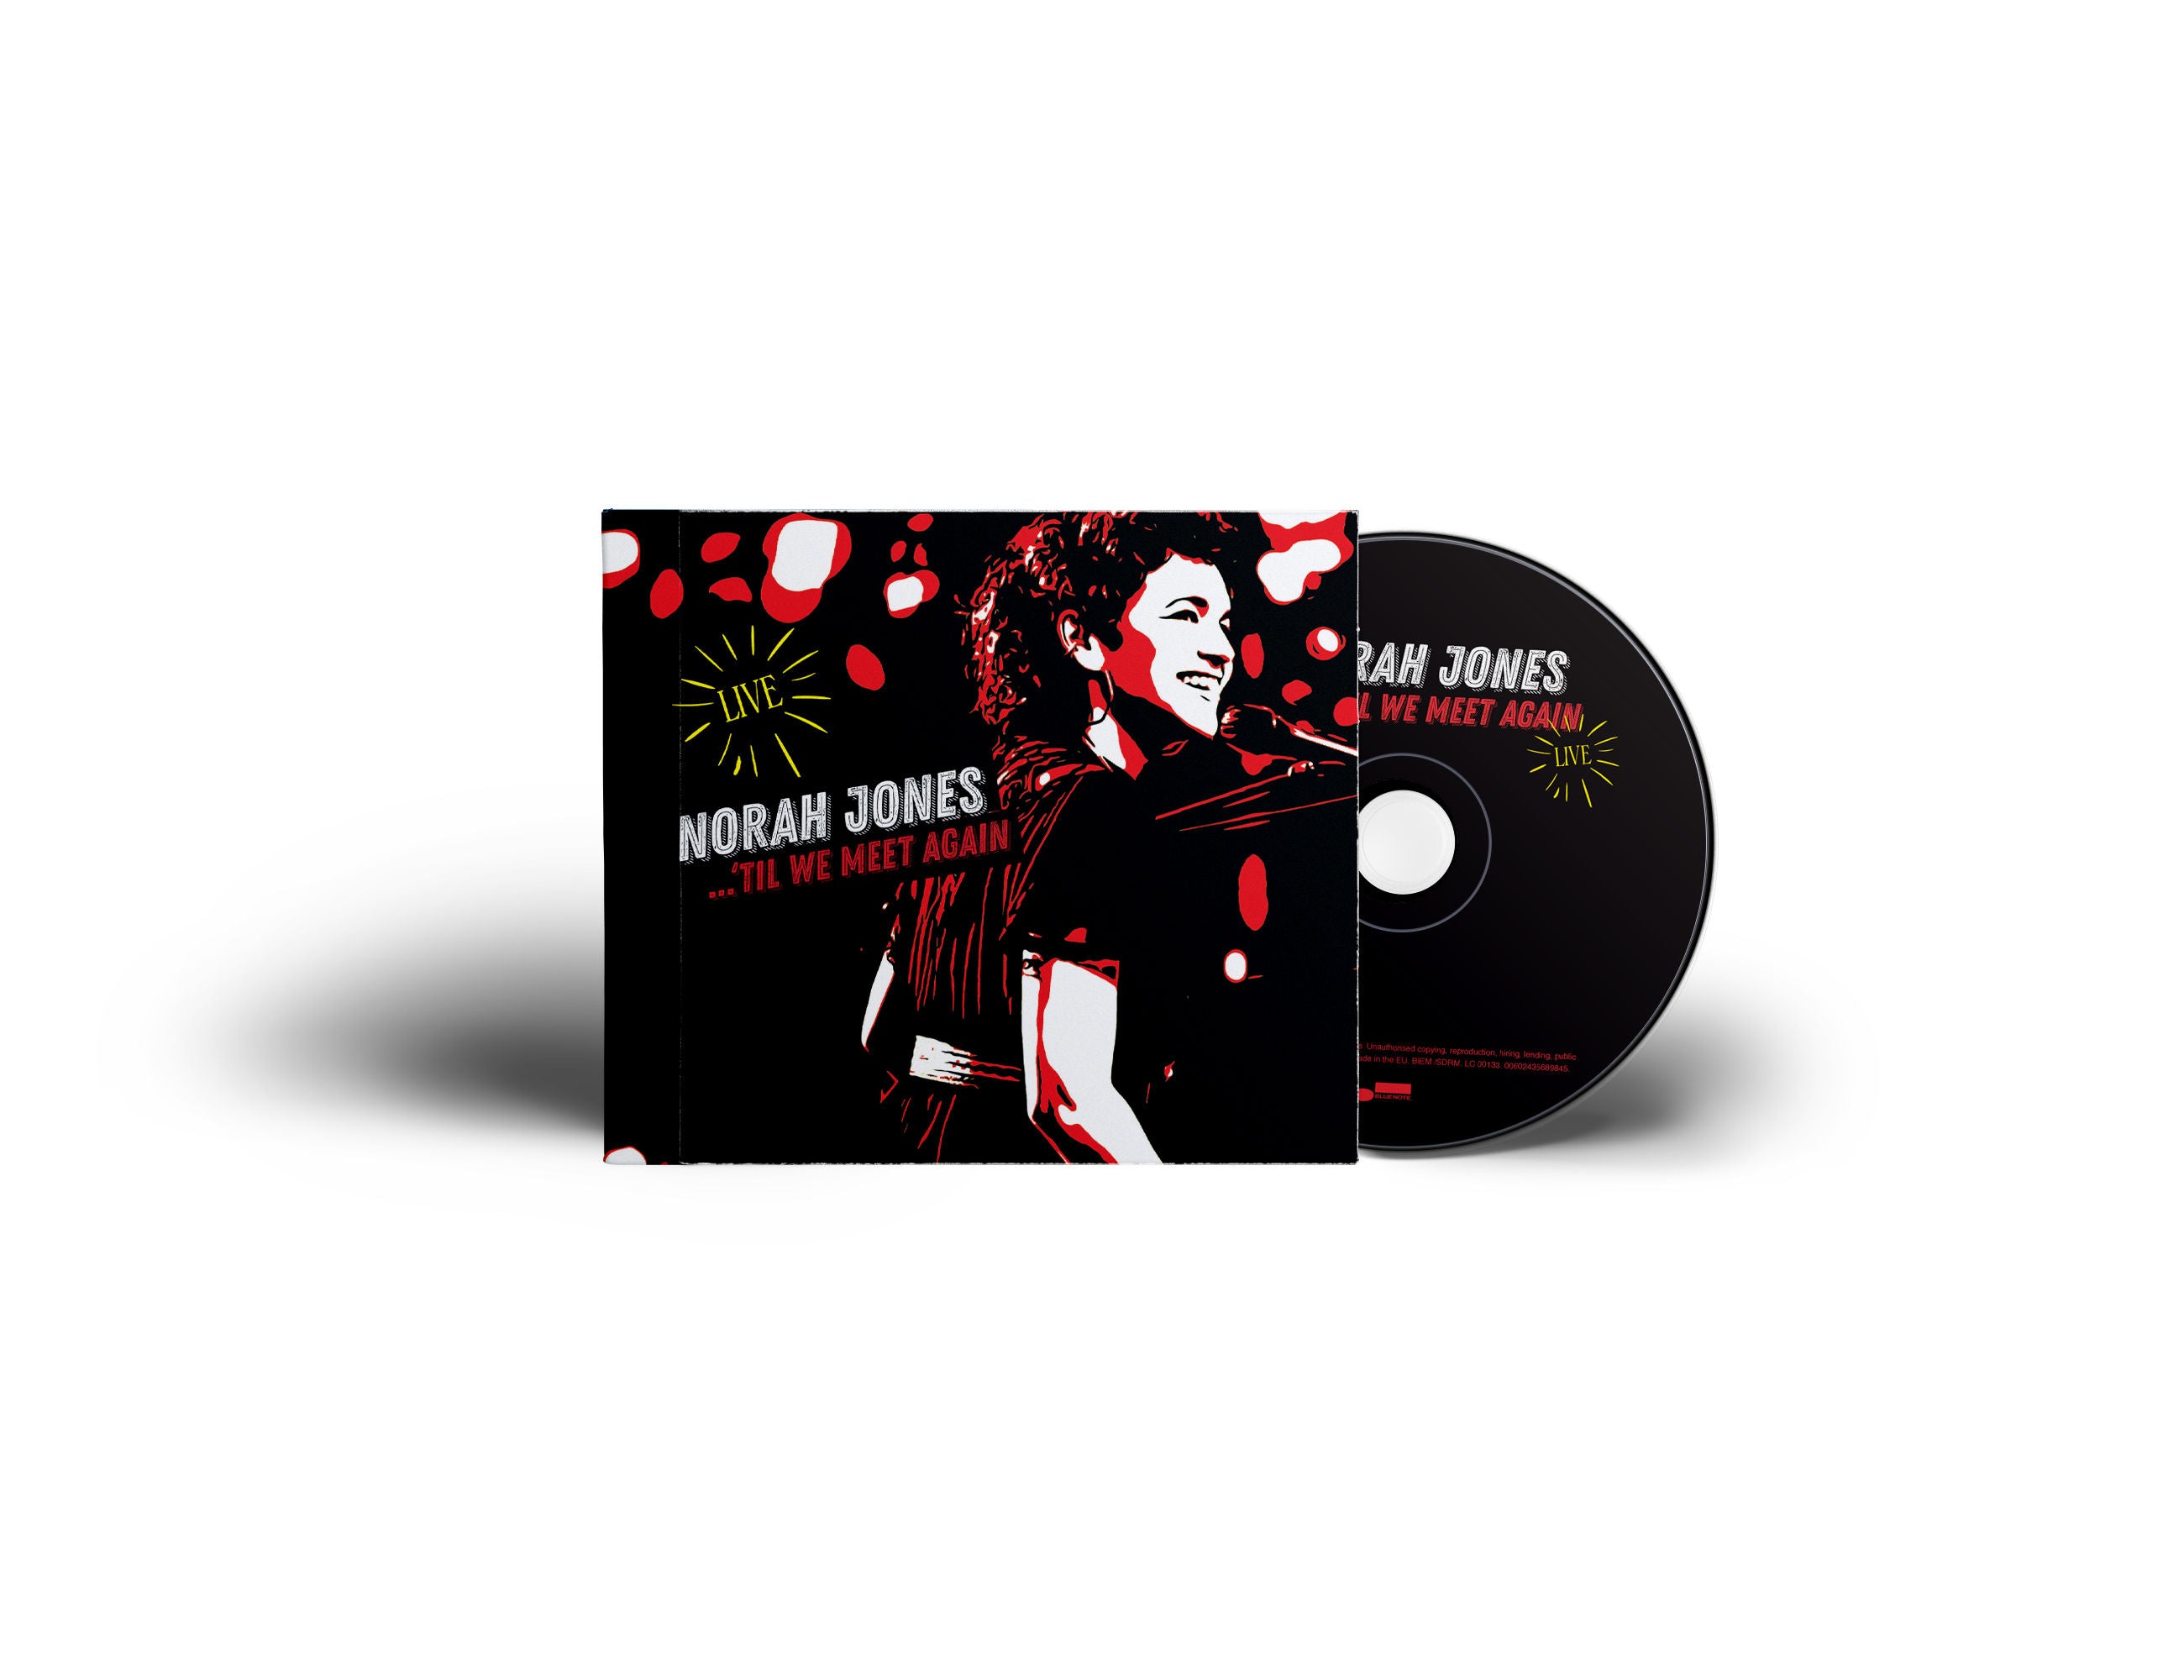 Norah Jones - Til We Meet Again: CD